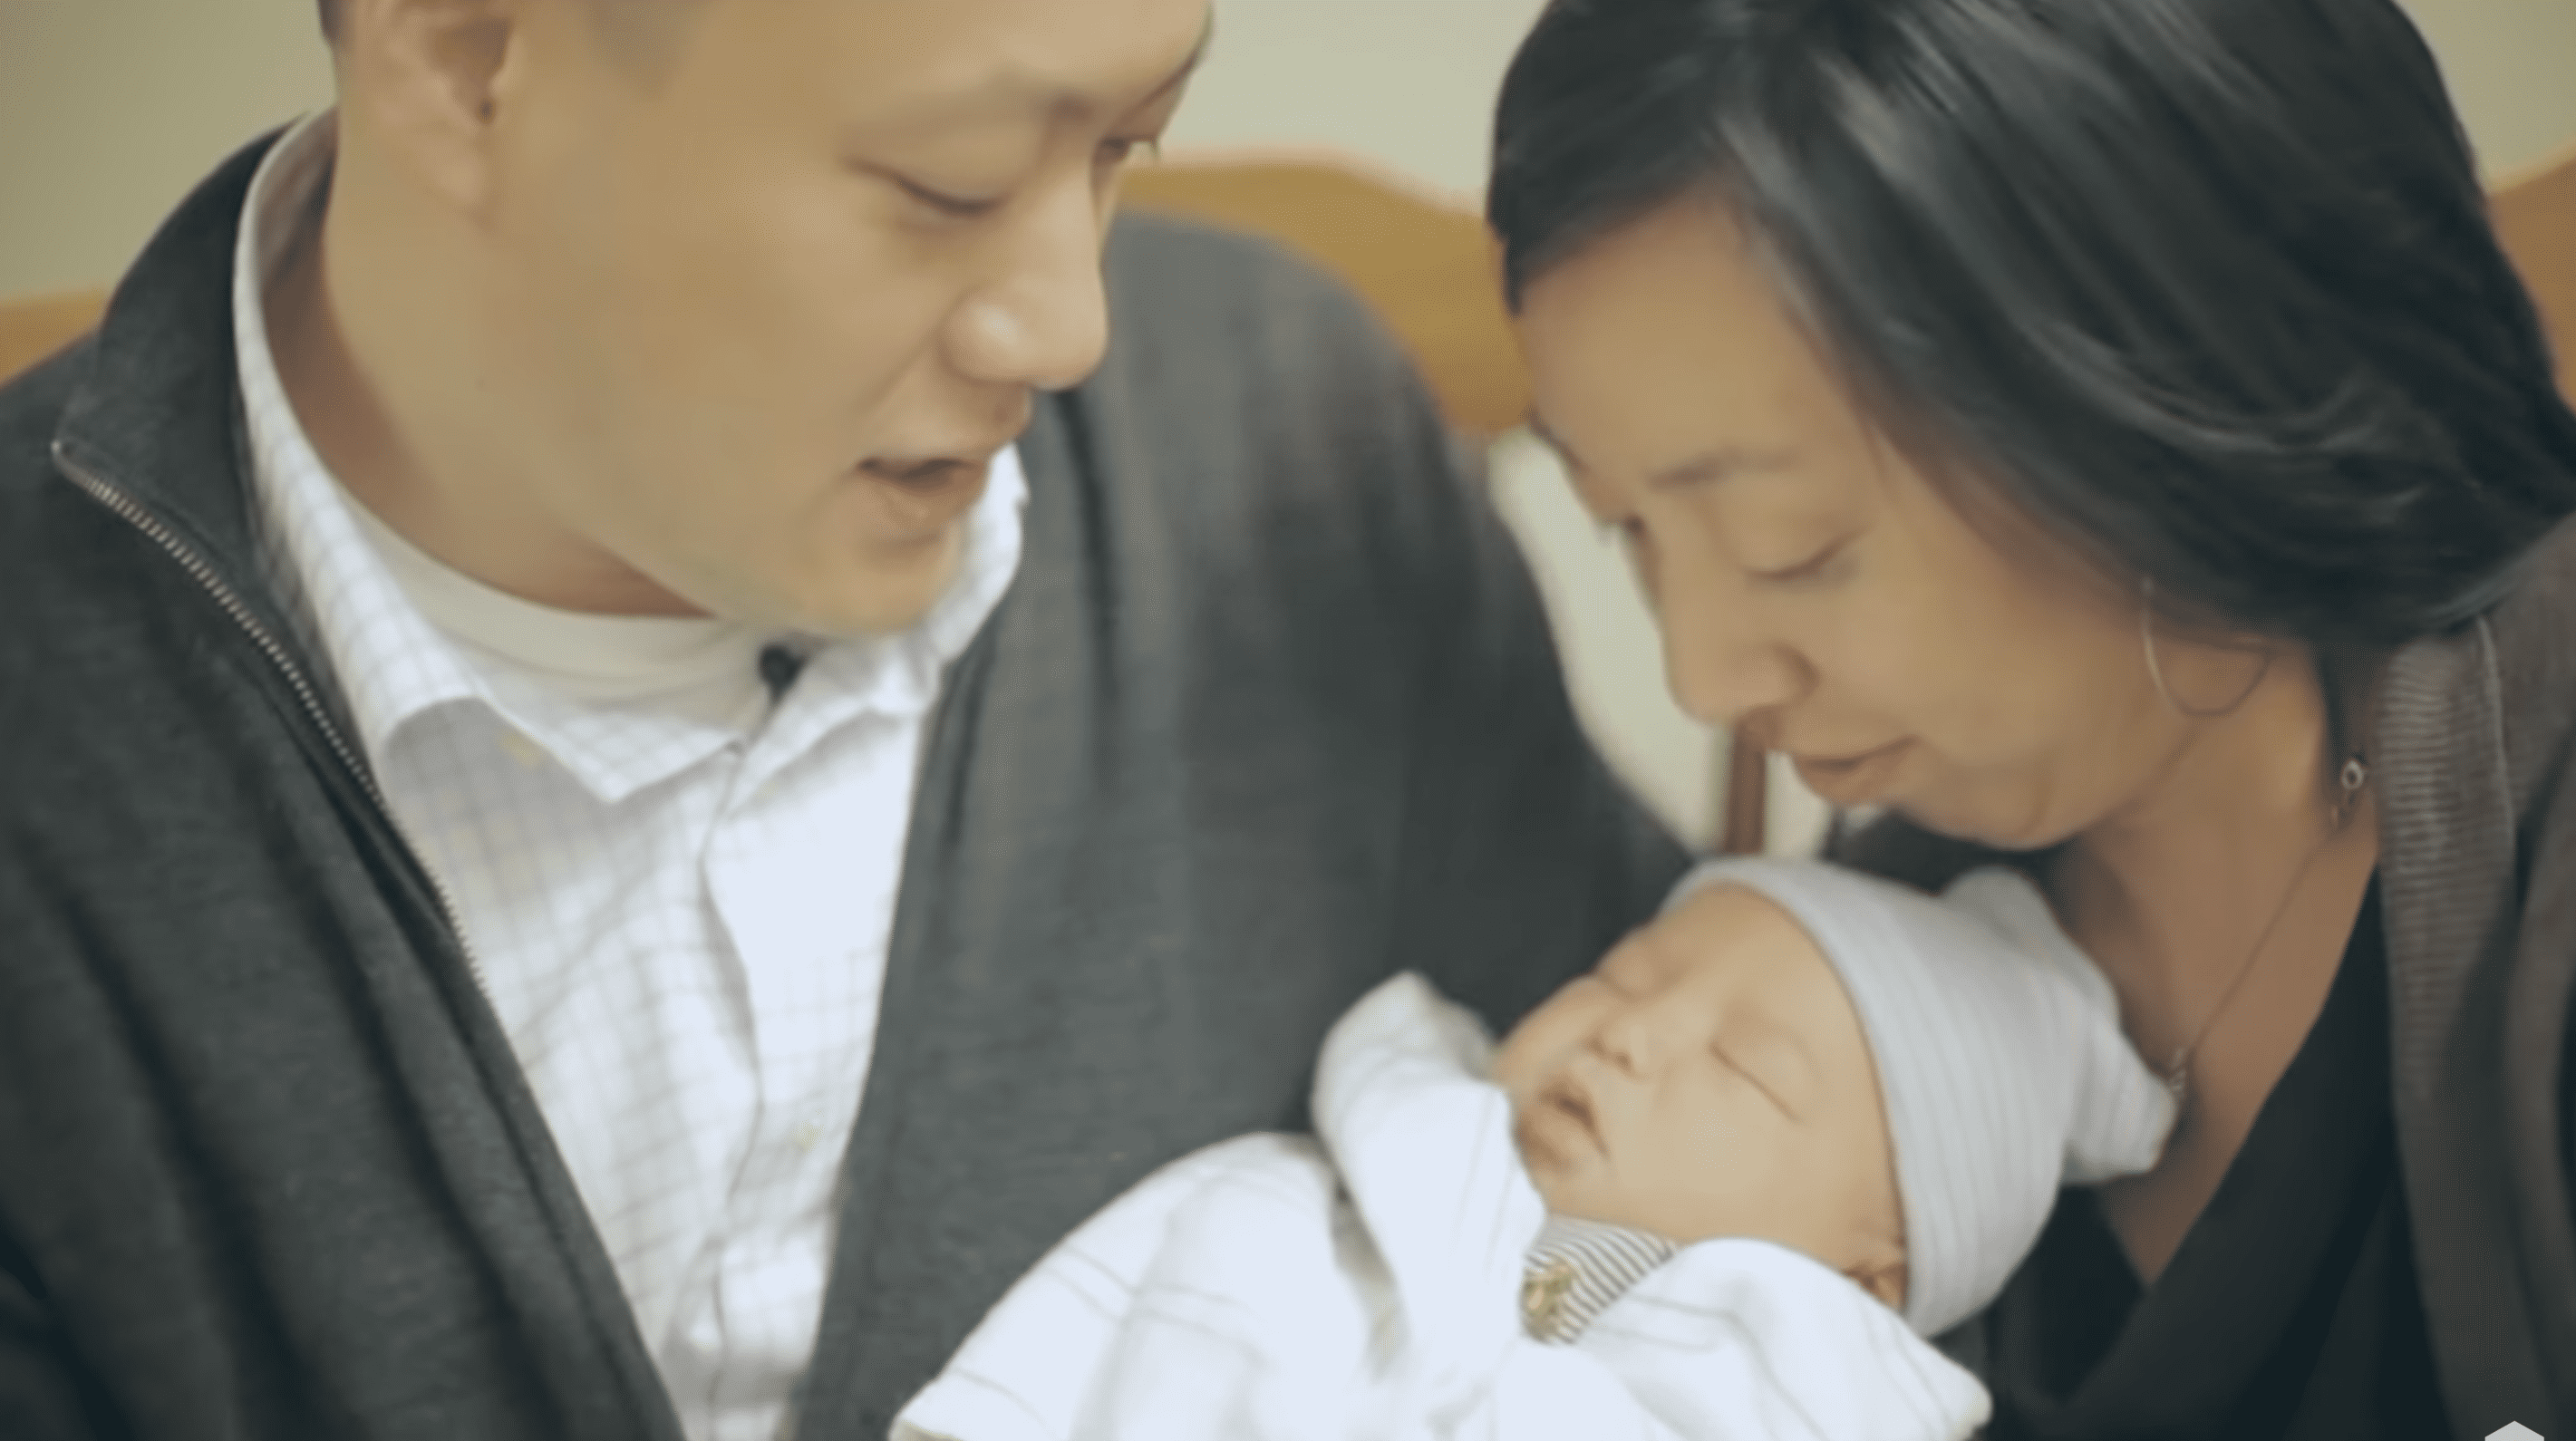 Die herzzerreißenden Momente, als die Familie Chen ihren Sohn im Krankenhaus festhielt. | Quelle: YouTube.com/The Austin Stone